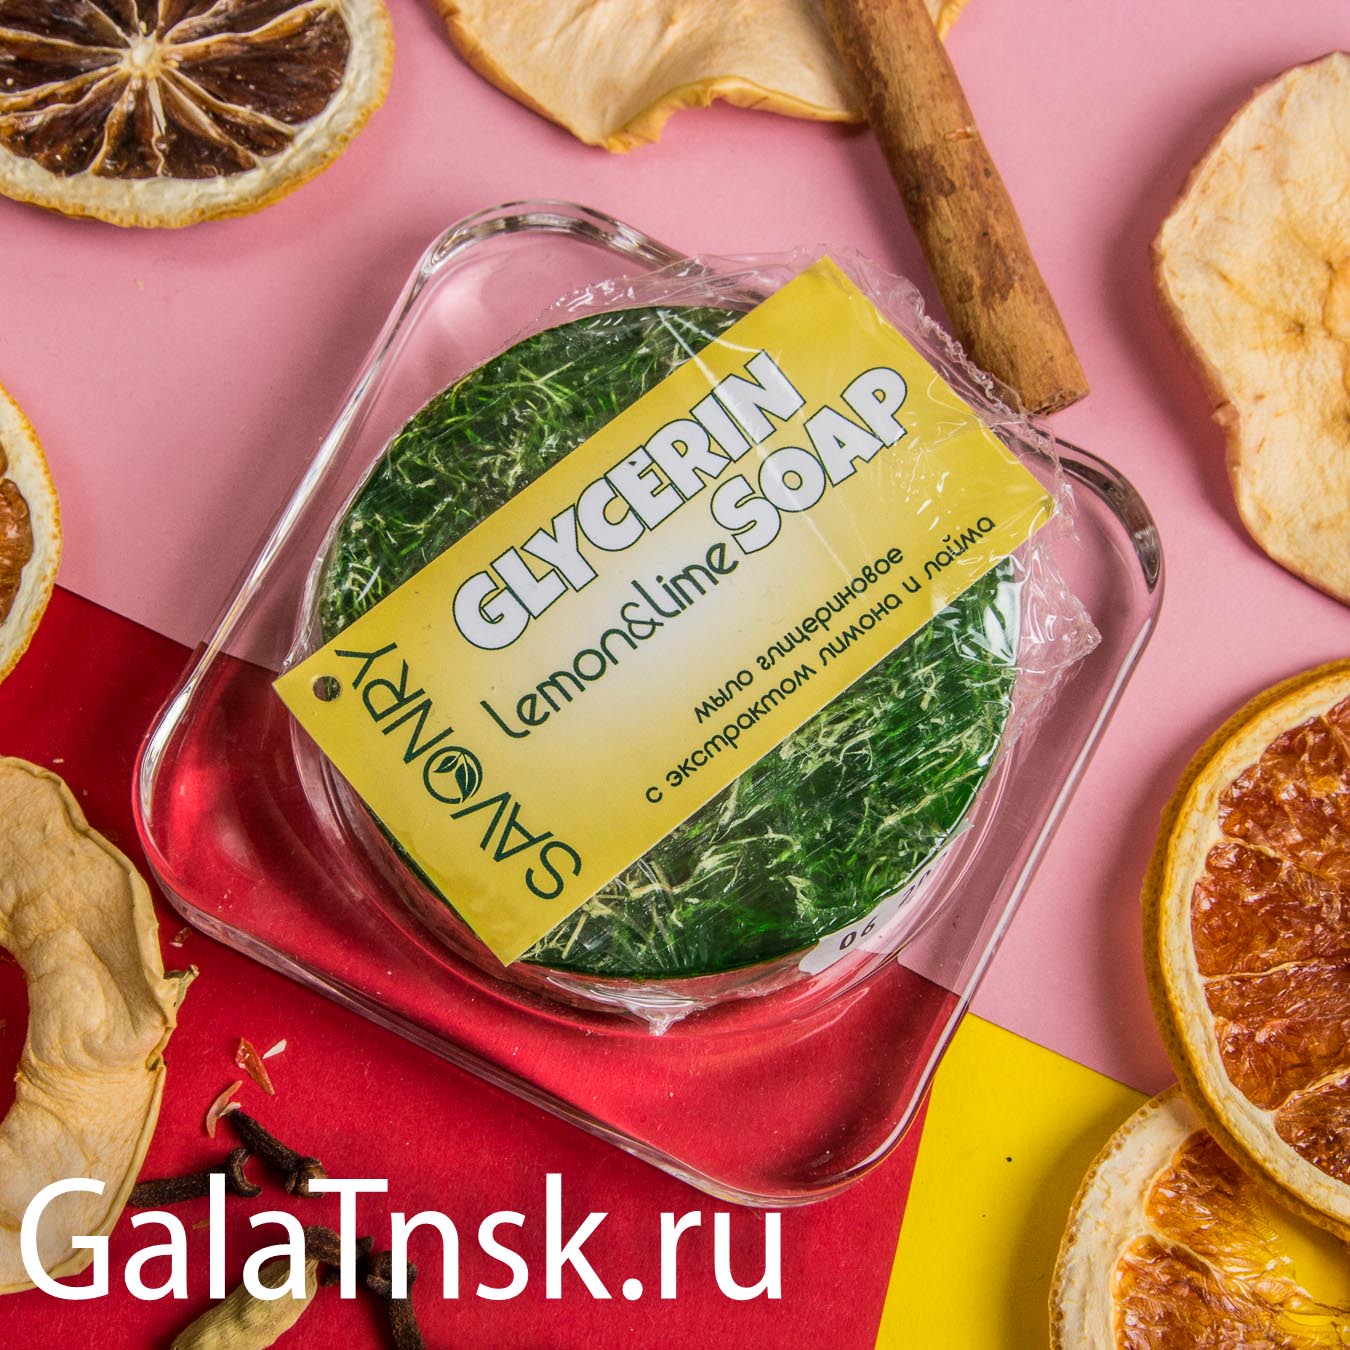 SAVONRY Мыло глицериновое с эфирным маслом с люфой ТЕКИЛА-ЛАЙМ (лимон и лайм) 100g